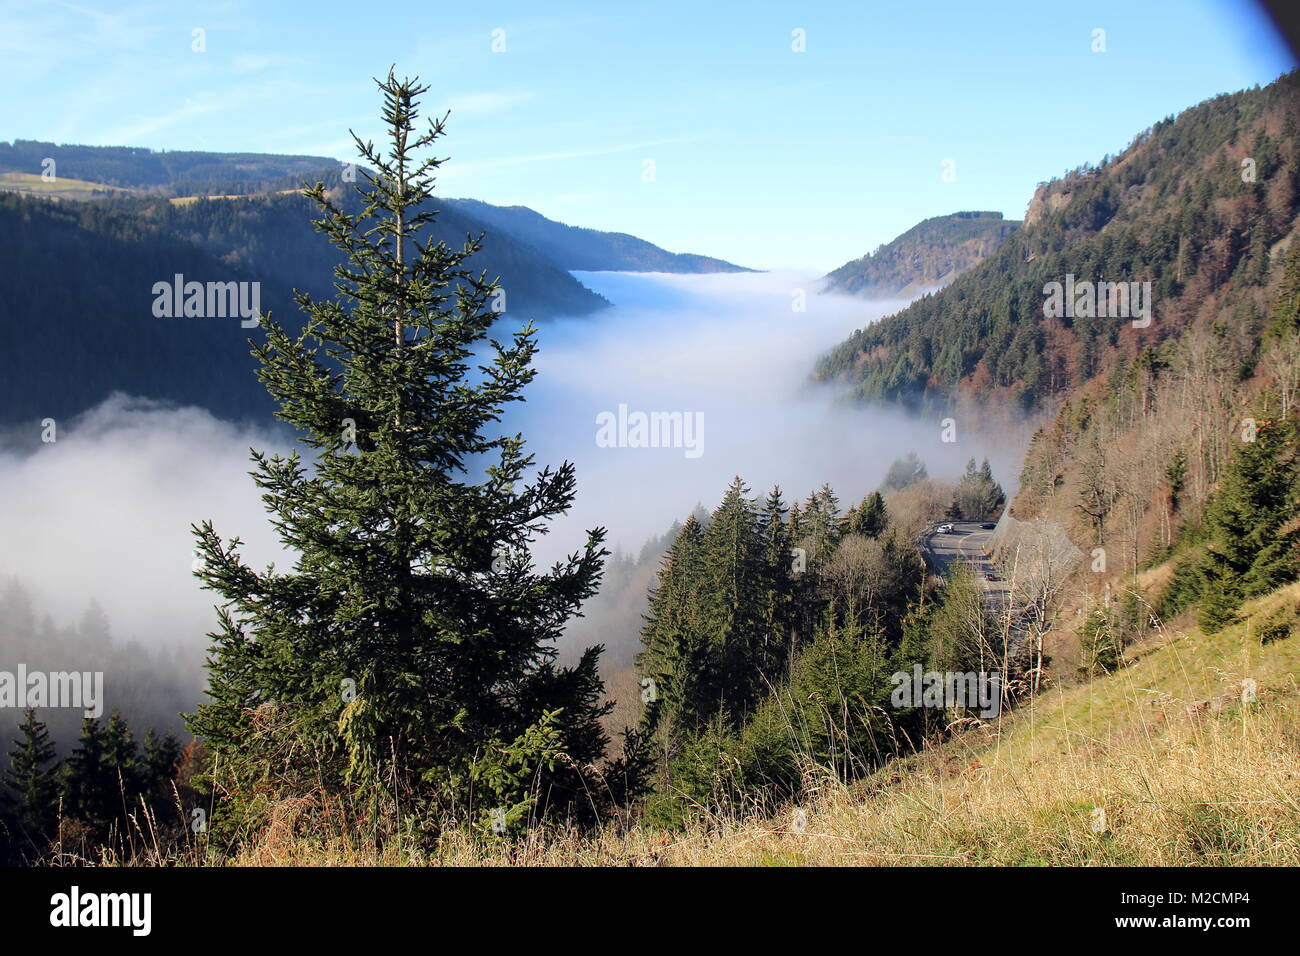 Wetterkapriolen: Während Teile des Breisgaus, des Höllentals und der Baar am Wochenende im Nebel versunken sind, öffnete sich den Besuchern des Hochschwarzwaldes ein herrlicher Ausblick auf das Panorama. Wie hier bei einer Anhöhe bei Breitnau (Landkreis Breisgau Hochschwarzwald) bot sich einer herrliche Fernsicht, darunter bettet sich der Nebel wie ein Wattebausch ins Tal. Bei Temperaturen von deutlich über zehn Grad Celsius luden zu einem Spaziergang oder einer Herbstwanderung in der Sonne ein. Stock Photo